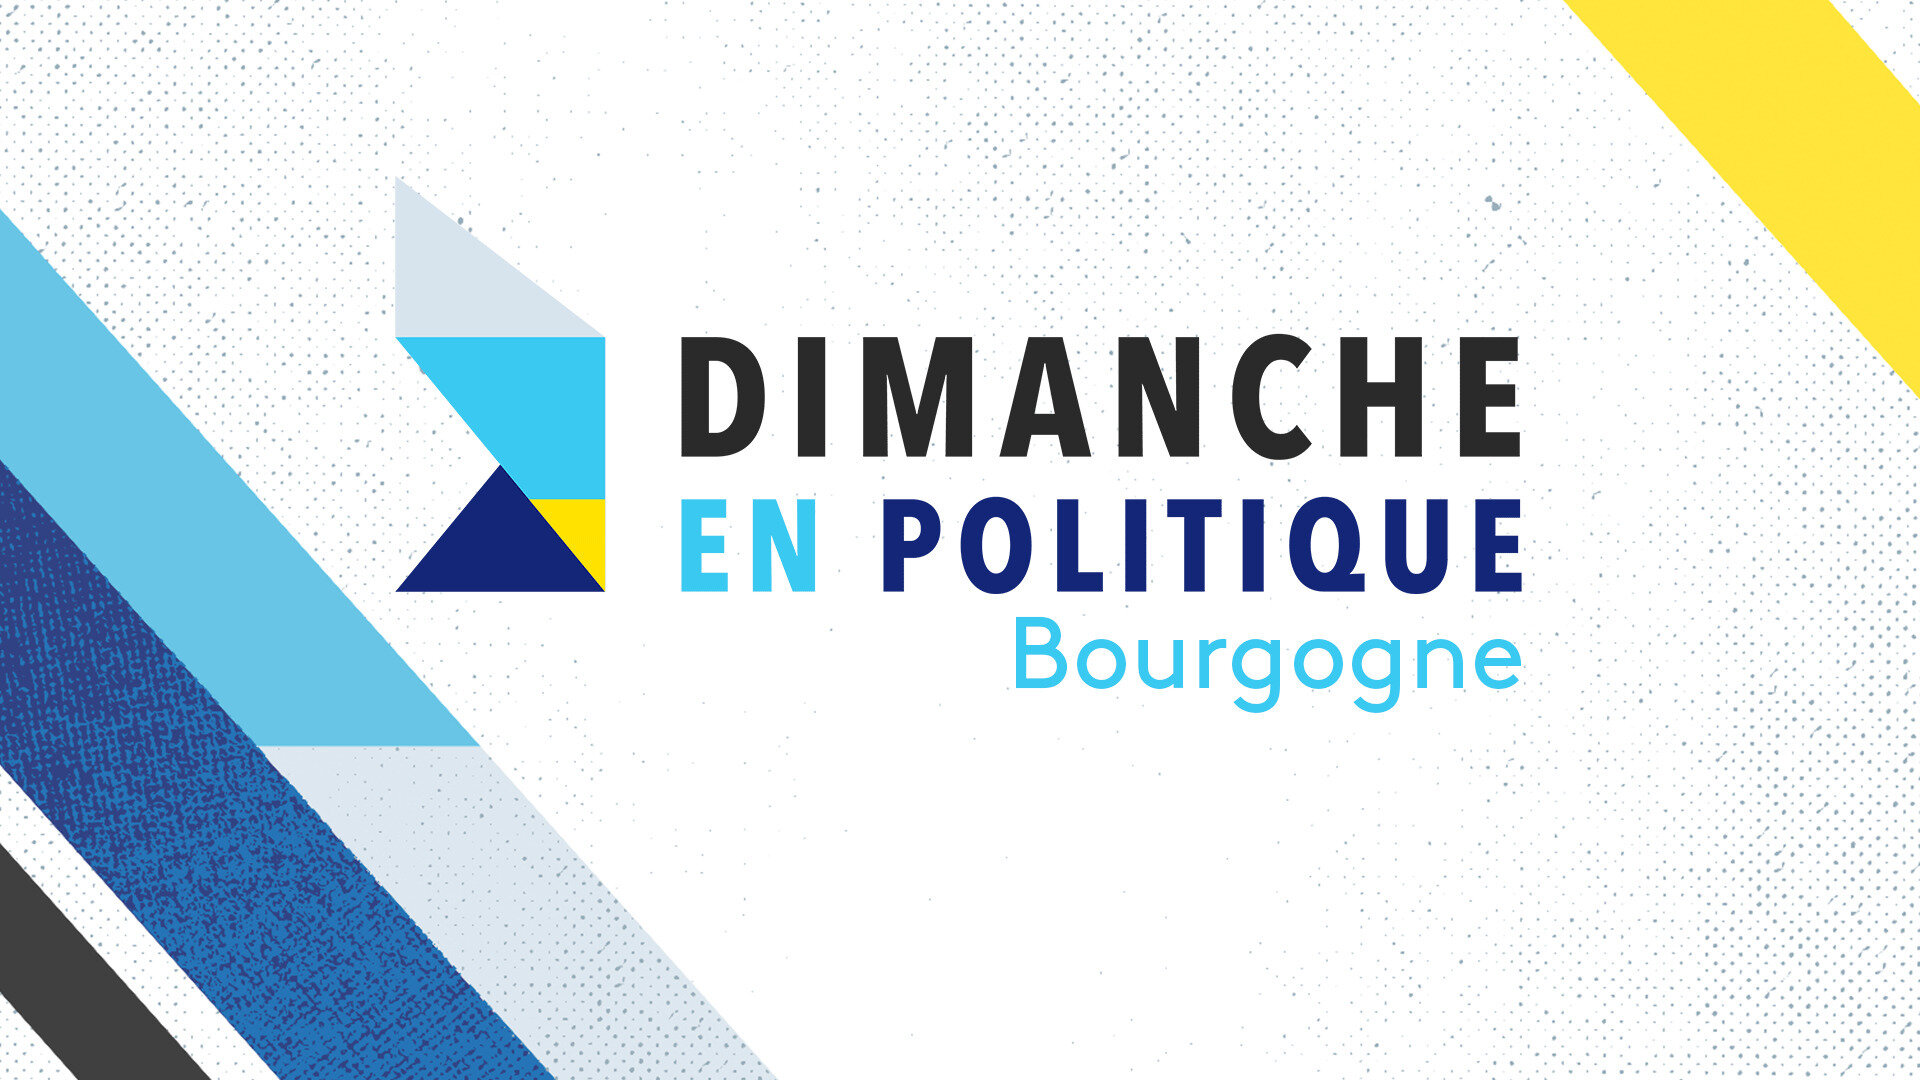 Dimanche en politique - Bourgogne : Covid : la politique peut-elle encore exister ?